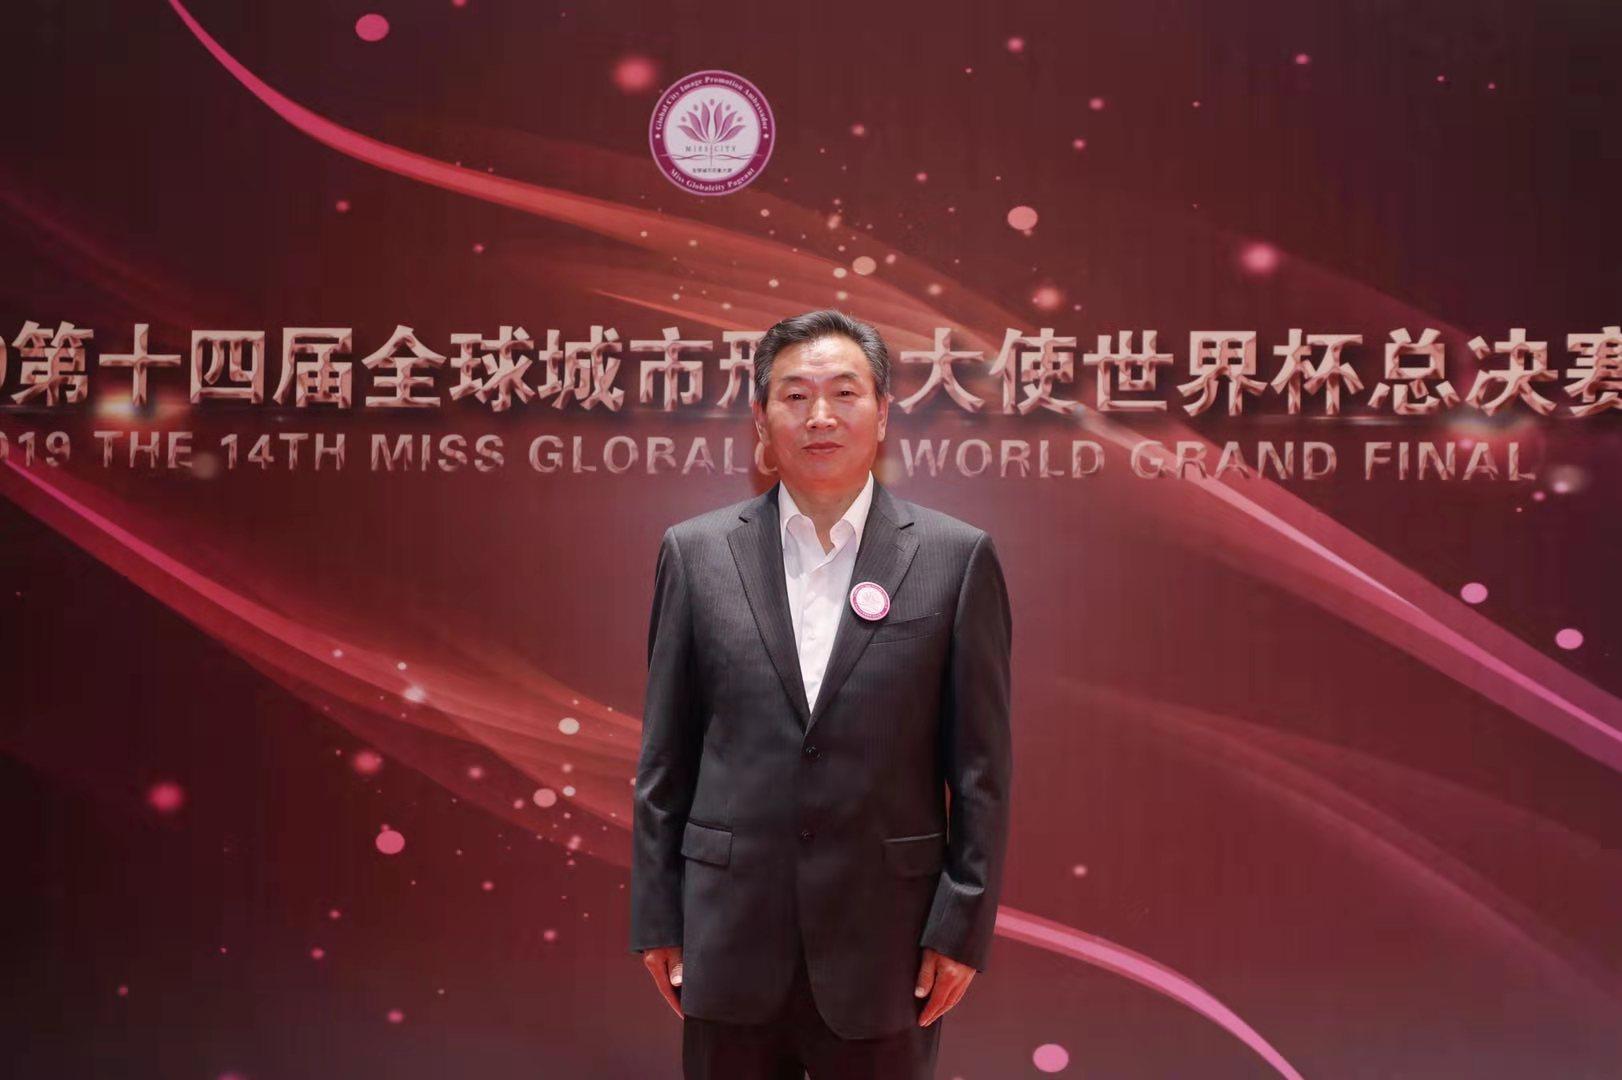 山东大学教授刘培平担任全球城市形象大赛世界